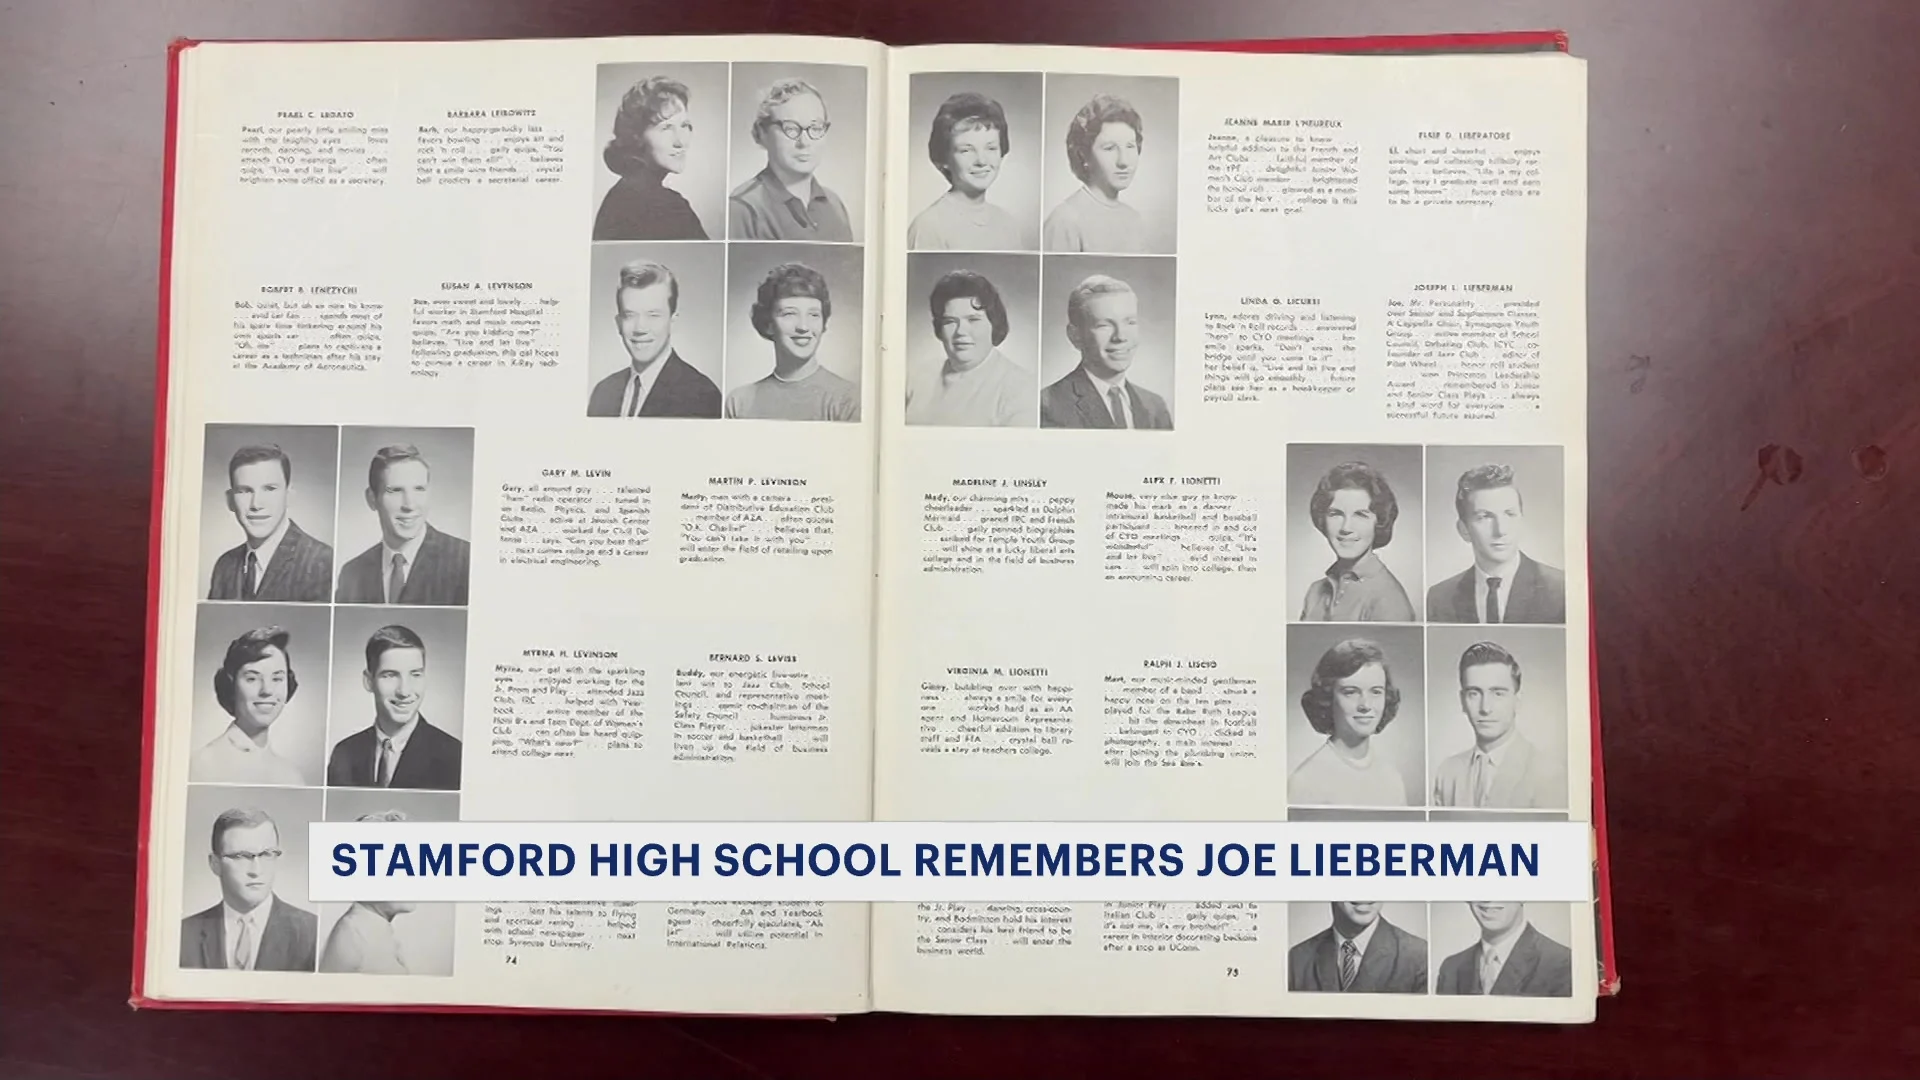 Stamford High School remembers Joe Lieberman